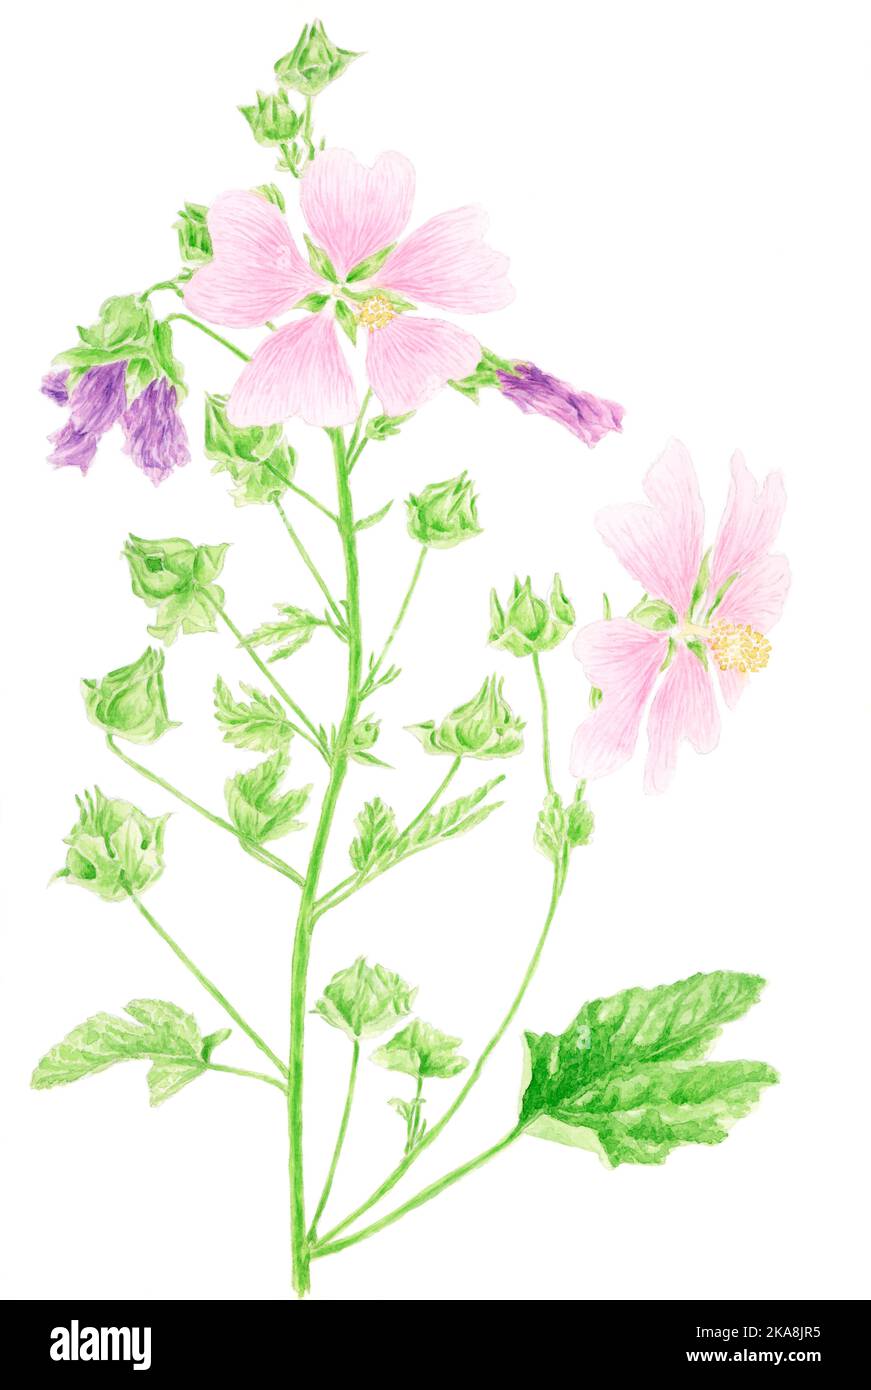 Malve (Malva sylvestris) botanische Zeichnung. Aquarell auf Papier. Stockfoto